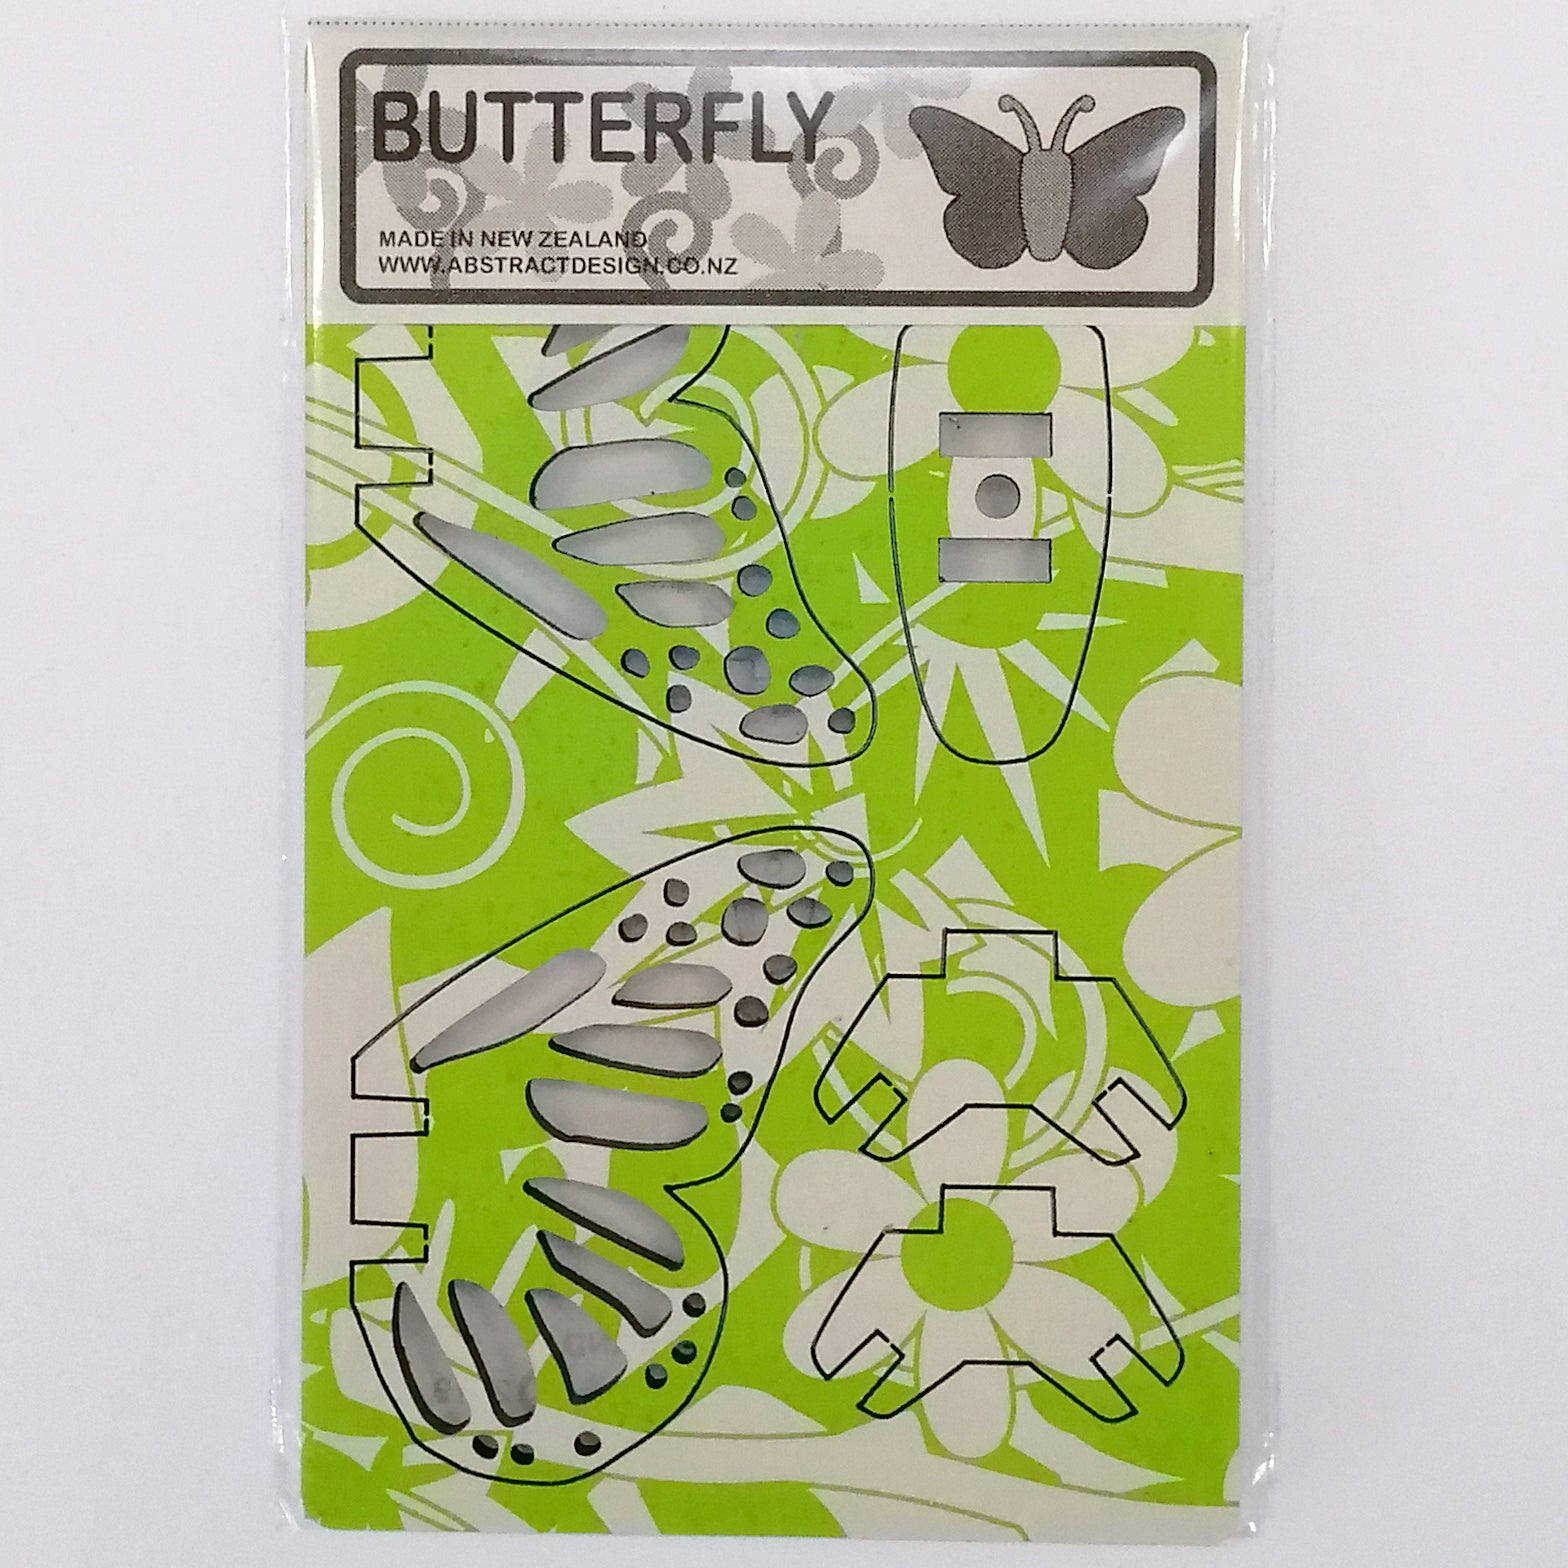 Flat-pack Kitset Wooden Model - Mini Butterfly - Green Pattern